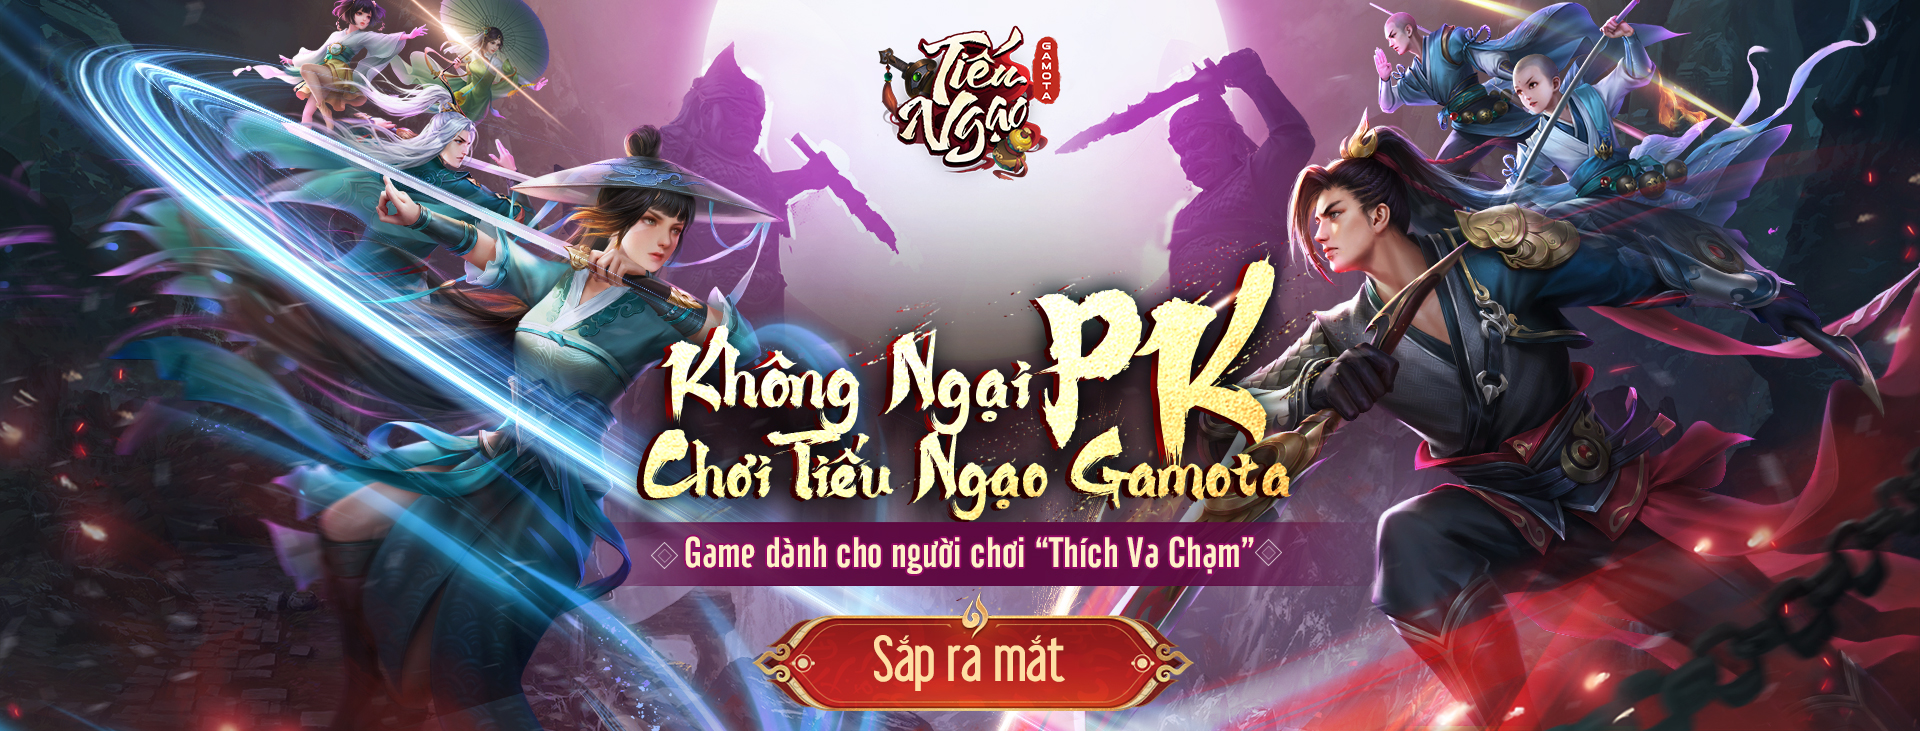 Một siêu phẩm kiếm hiệp Kim Dung sắp “tái ngộ” game thủ Việt, được phát triển bởi Perfect World - Ảnh 1.